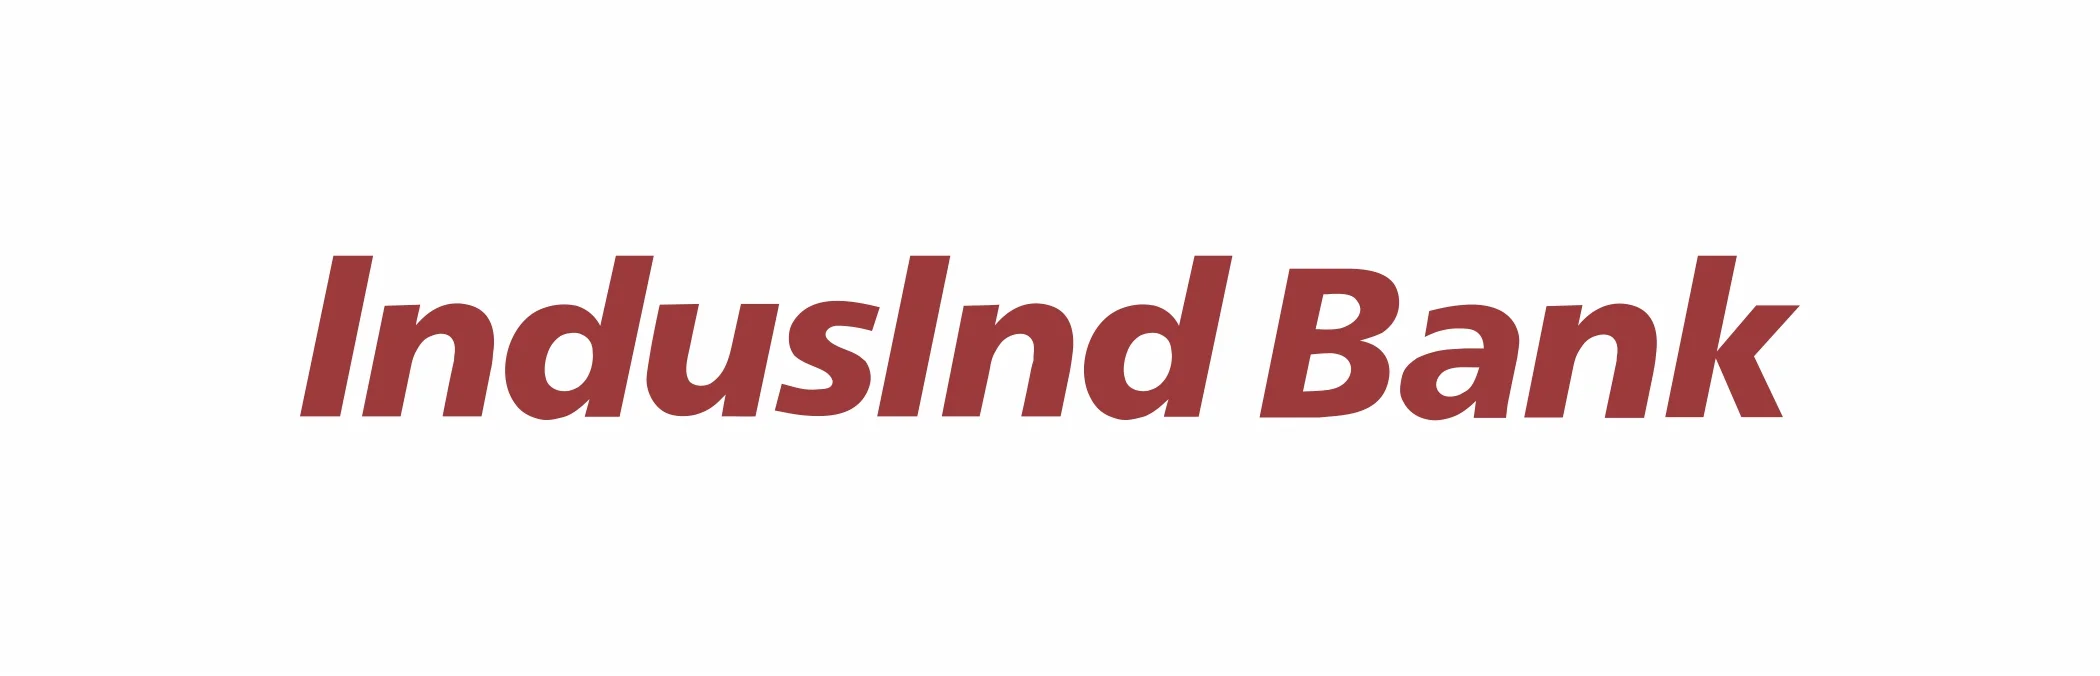 Indusind Bank Ltd Unclaimed Shares